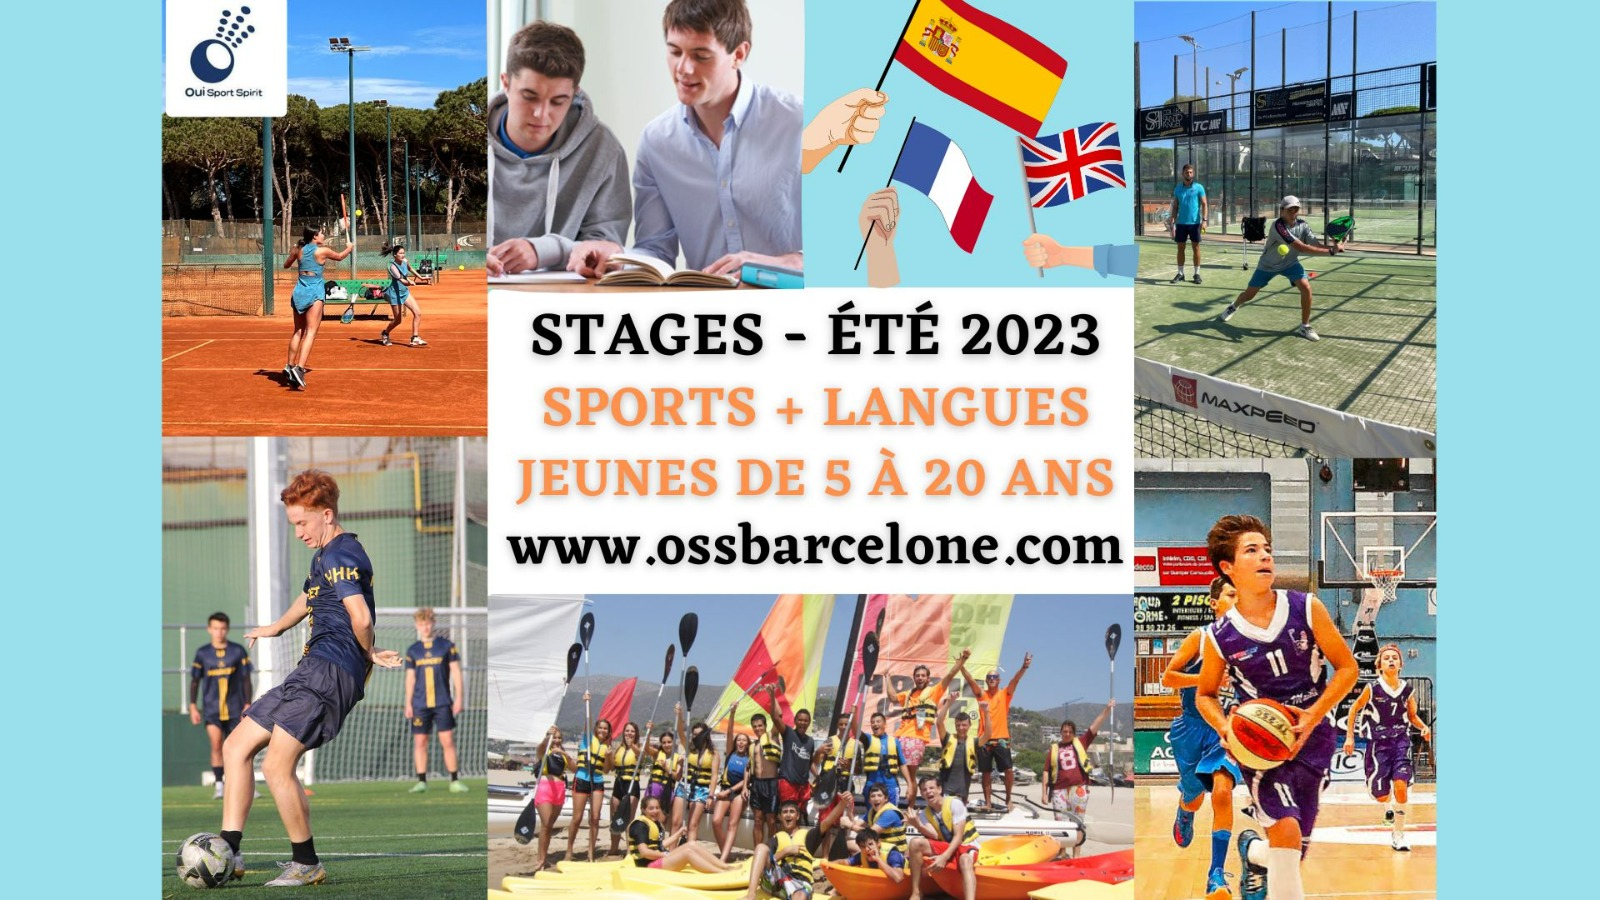 Der Sommer verspricht Spaß für junge Leute! In Barcelona ist für jeden etwas dabei: padel, Tennis, Fußball, Multisport, nautische Aktivitäten…